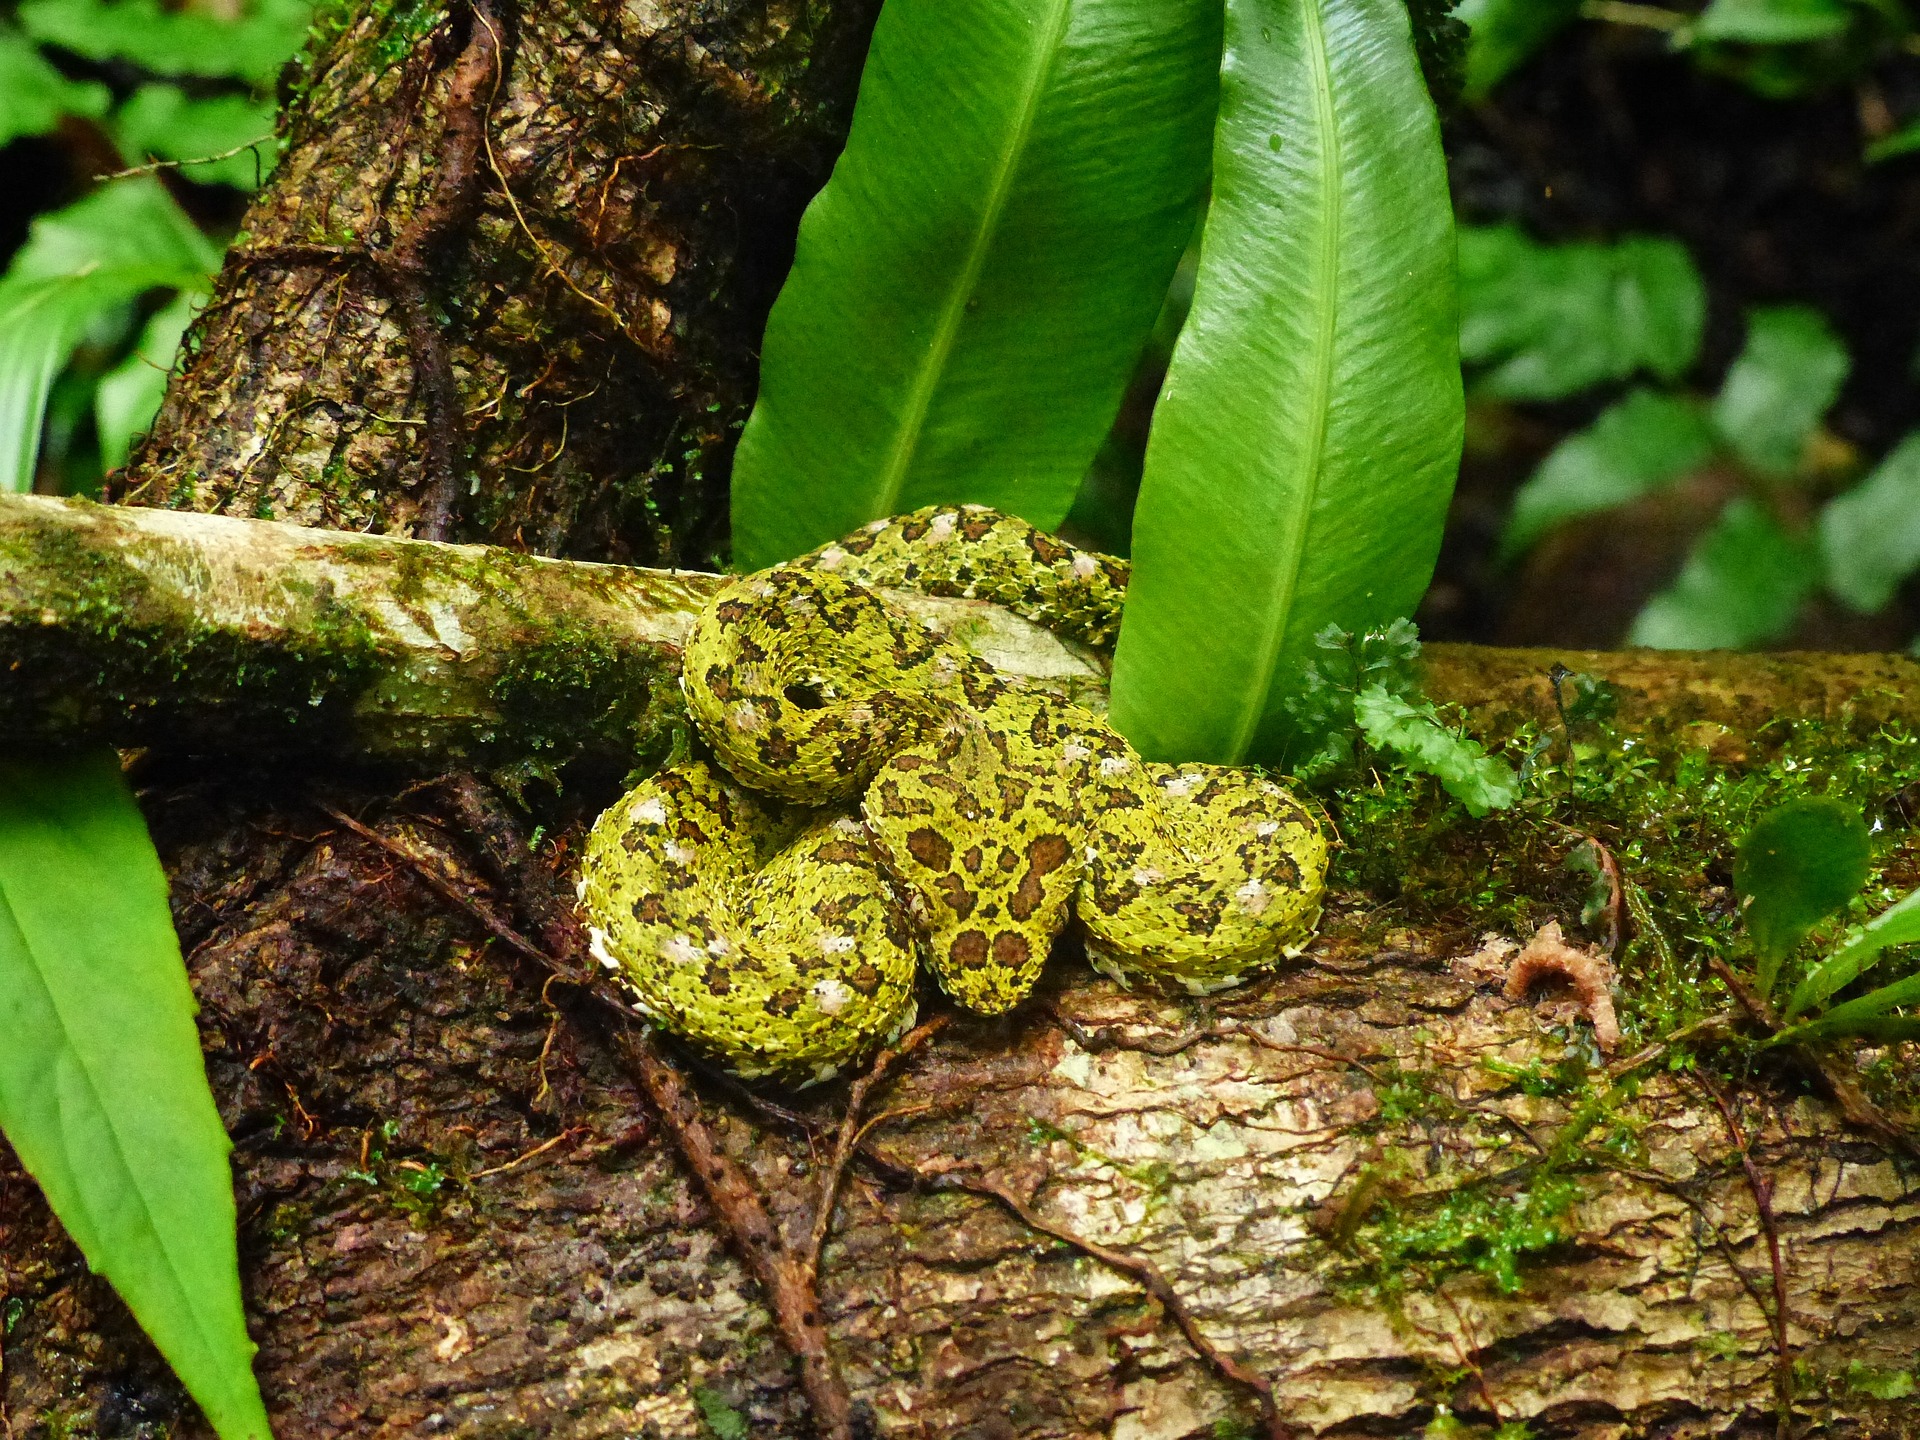 Die Greifschwanz Lanzenotter ist eine der giftigsten Schlangen in Costa Rica.